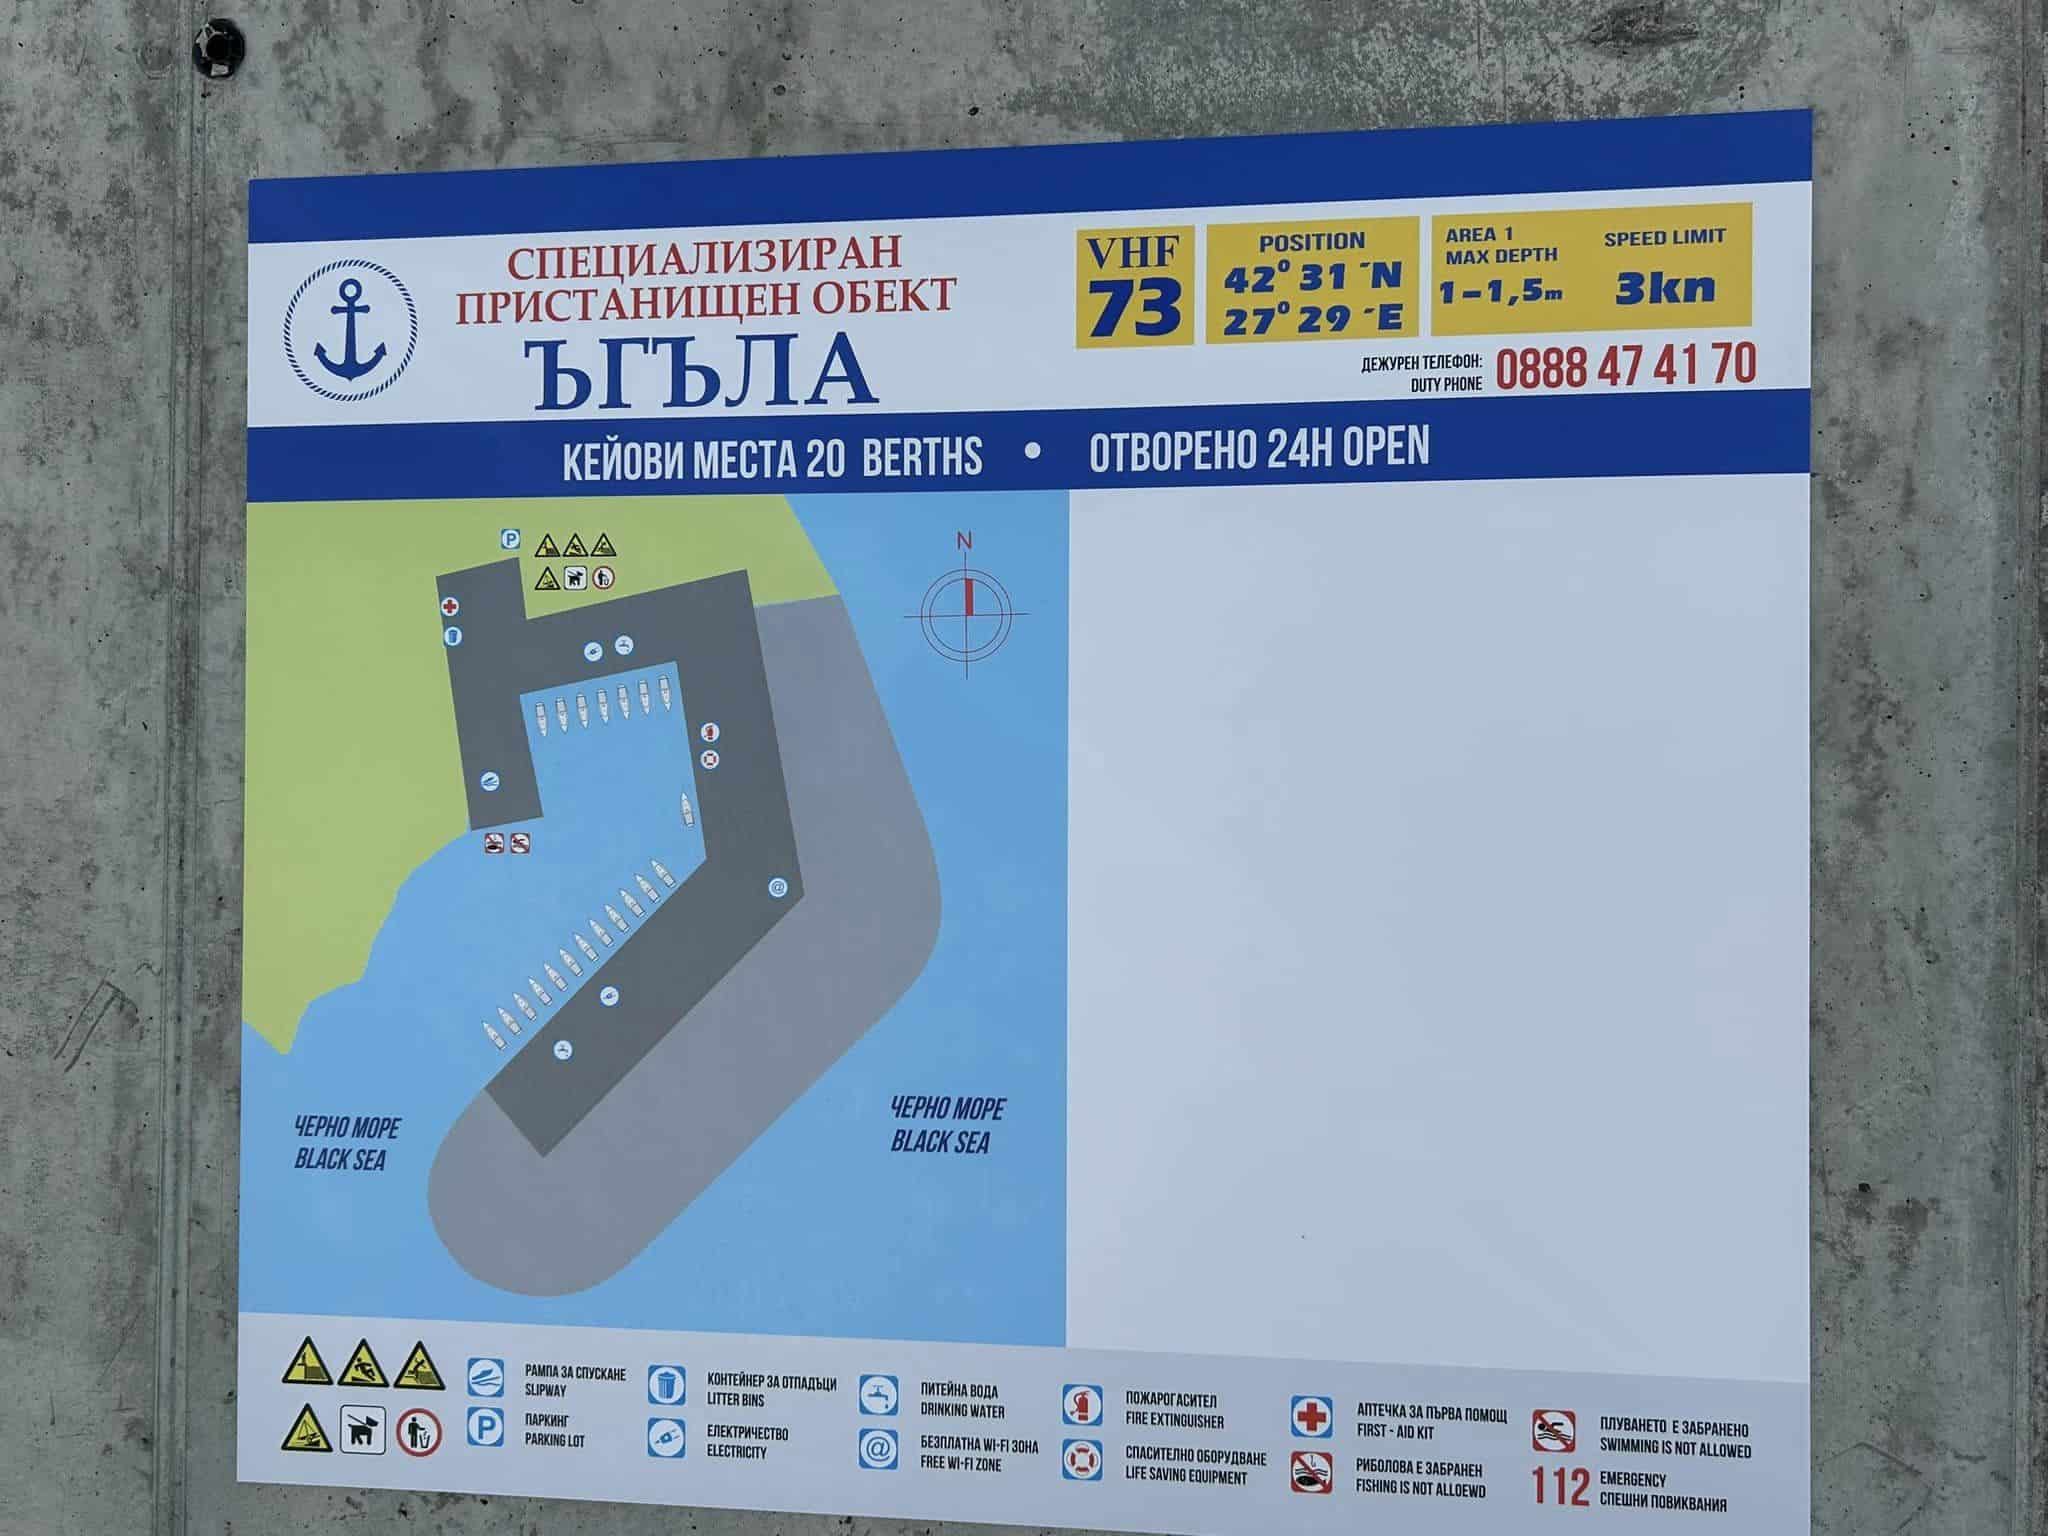 Нова лодкостоянка в местност Ъгъла“ на Солниците в Бургас има